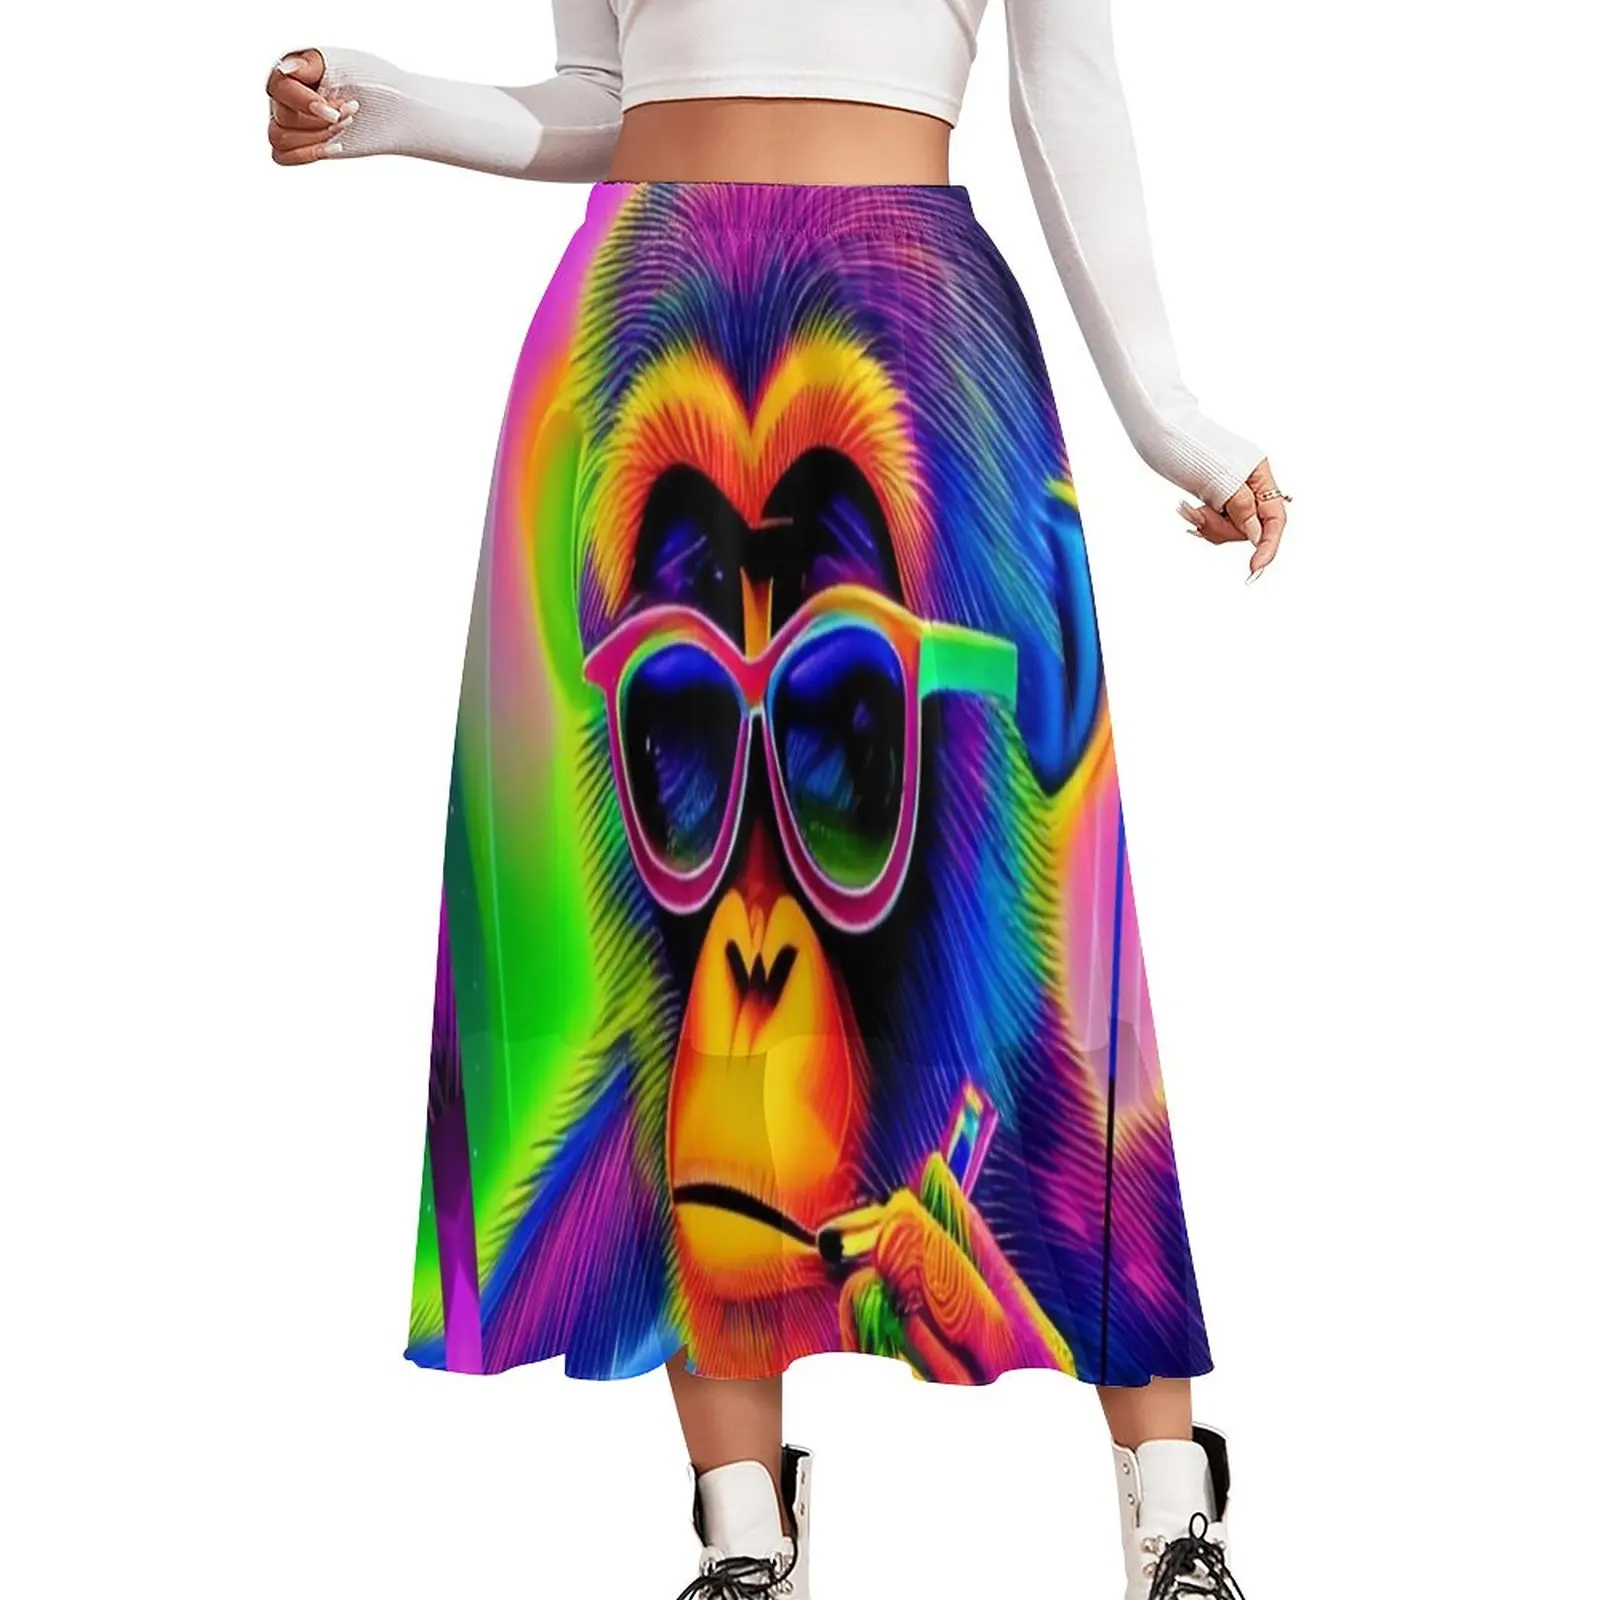 

Шифоновая юбка с принтом обезьяны, Повседневная пляжная юбка в уличном стиле с забавным принтом животных, одежда с графическим принтом в стиле бохо, подарок на день рождения